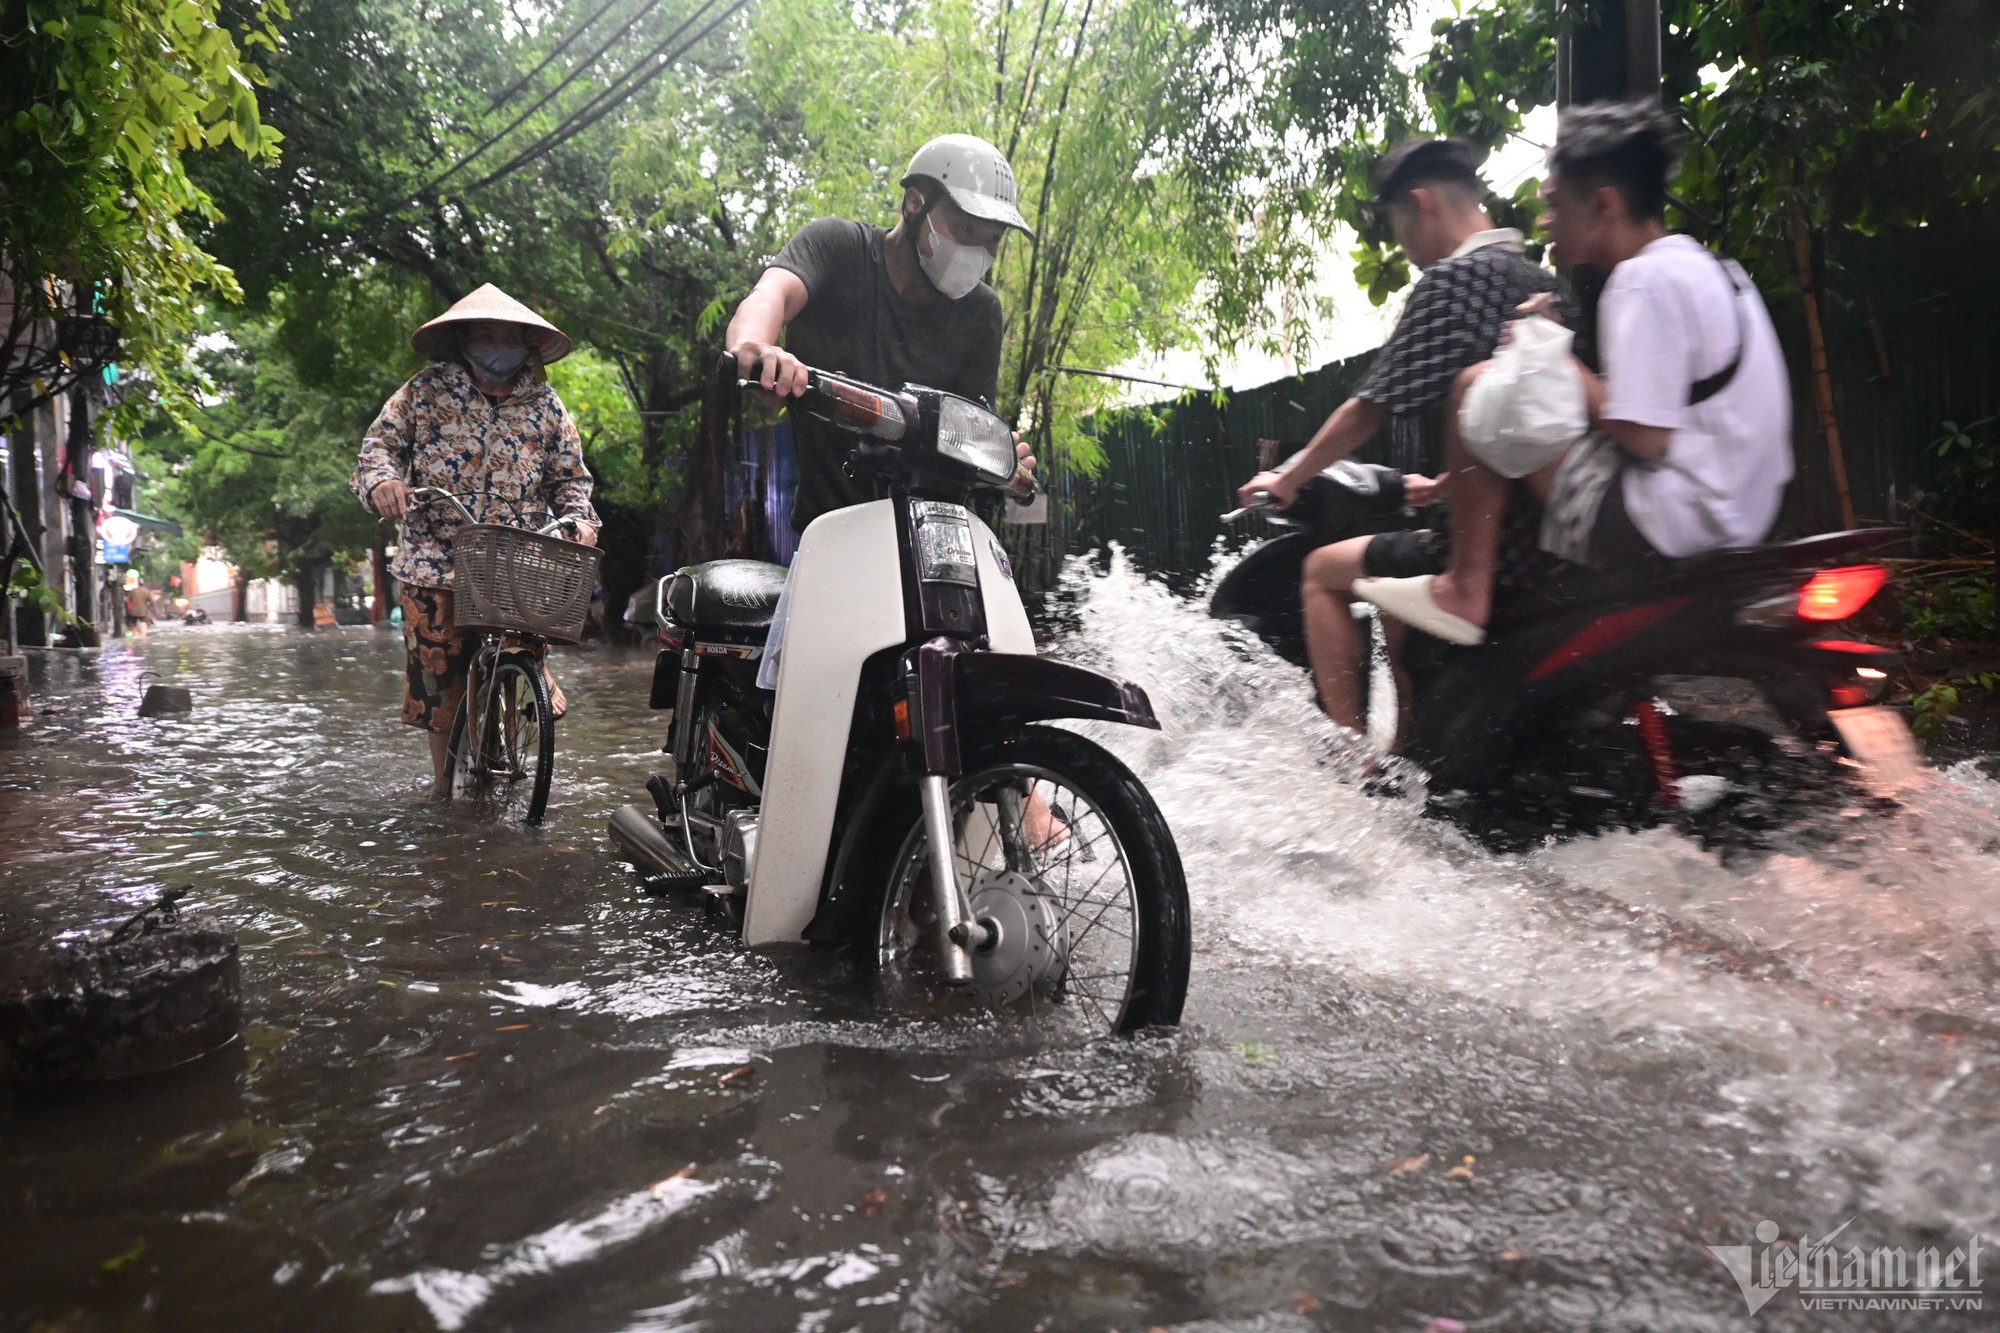 Hà Nội mưa lớn, người đi xe máy chới với giữa dòng nước ngập - Ảnh 3.